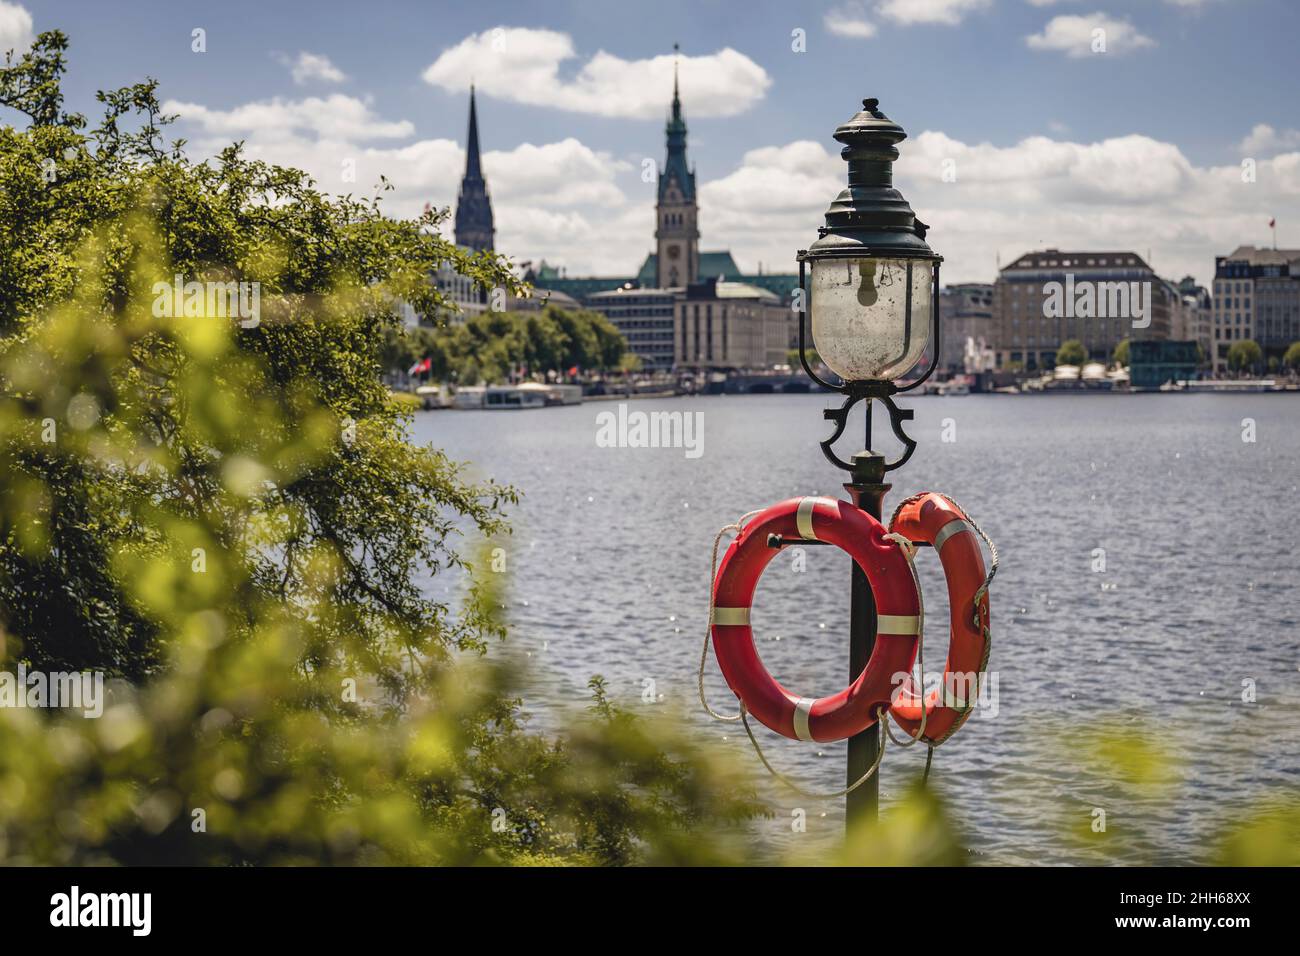 Germany, Hamburg, Life belts hanging on street light standing on shore of Inner Alster Lake Stock Photo